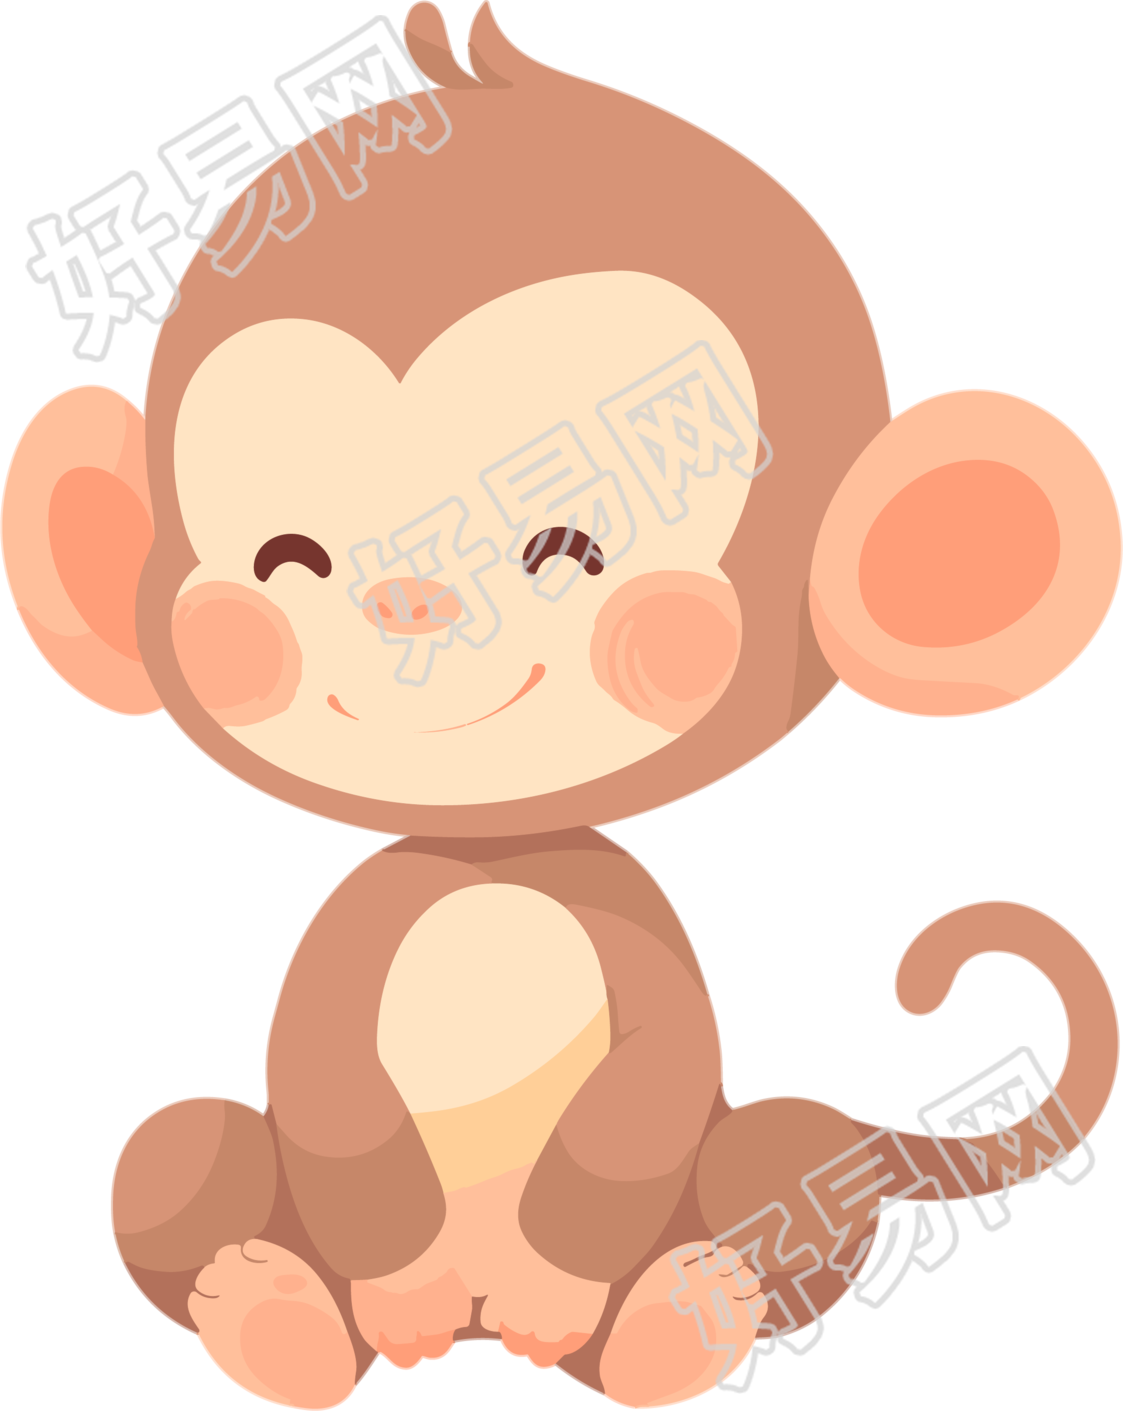 猴子卡通扁平插画